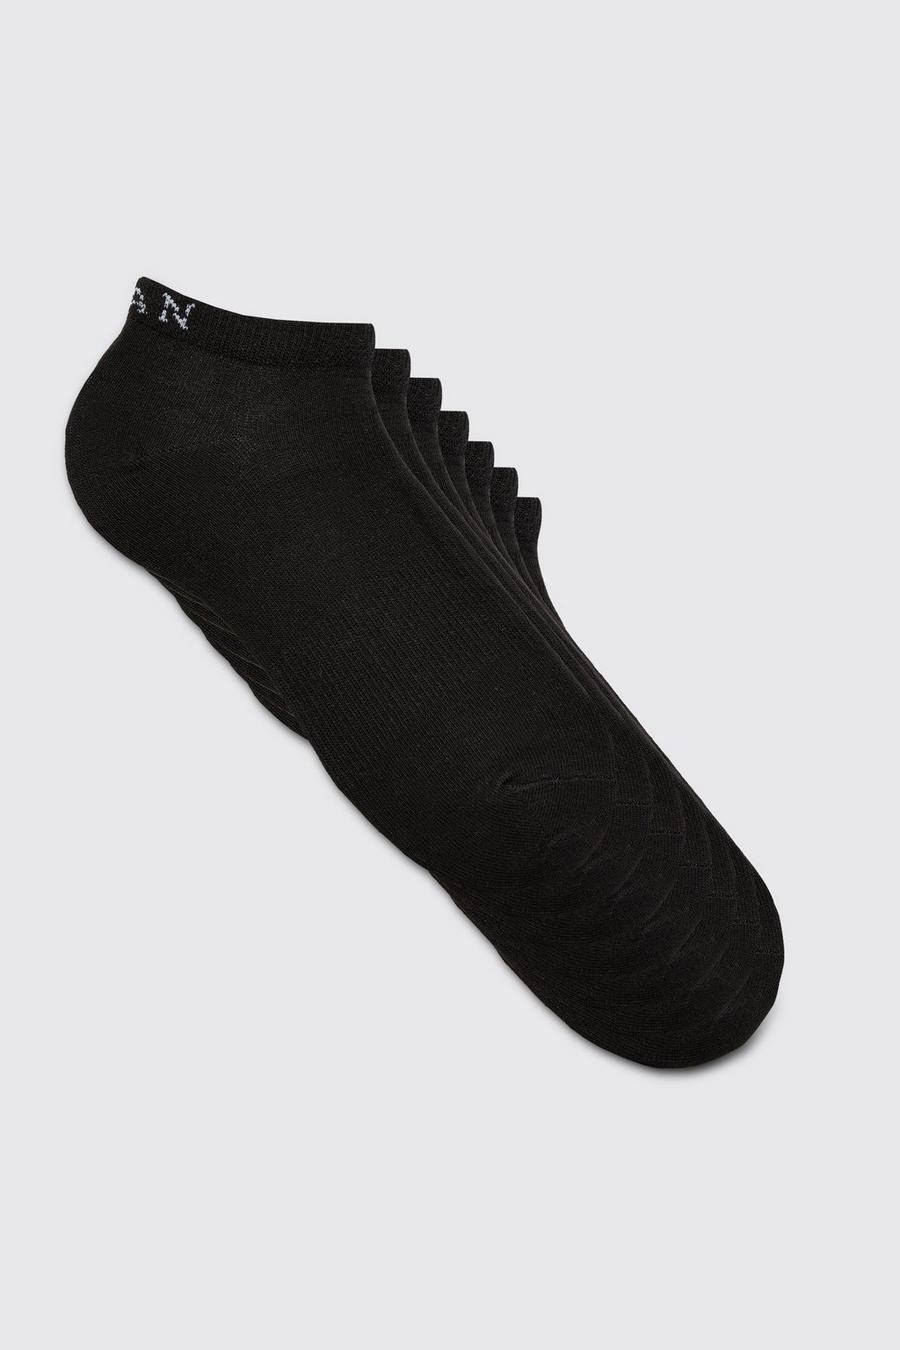 Lot de 7 paires de chaussettes - MAN, Black